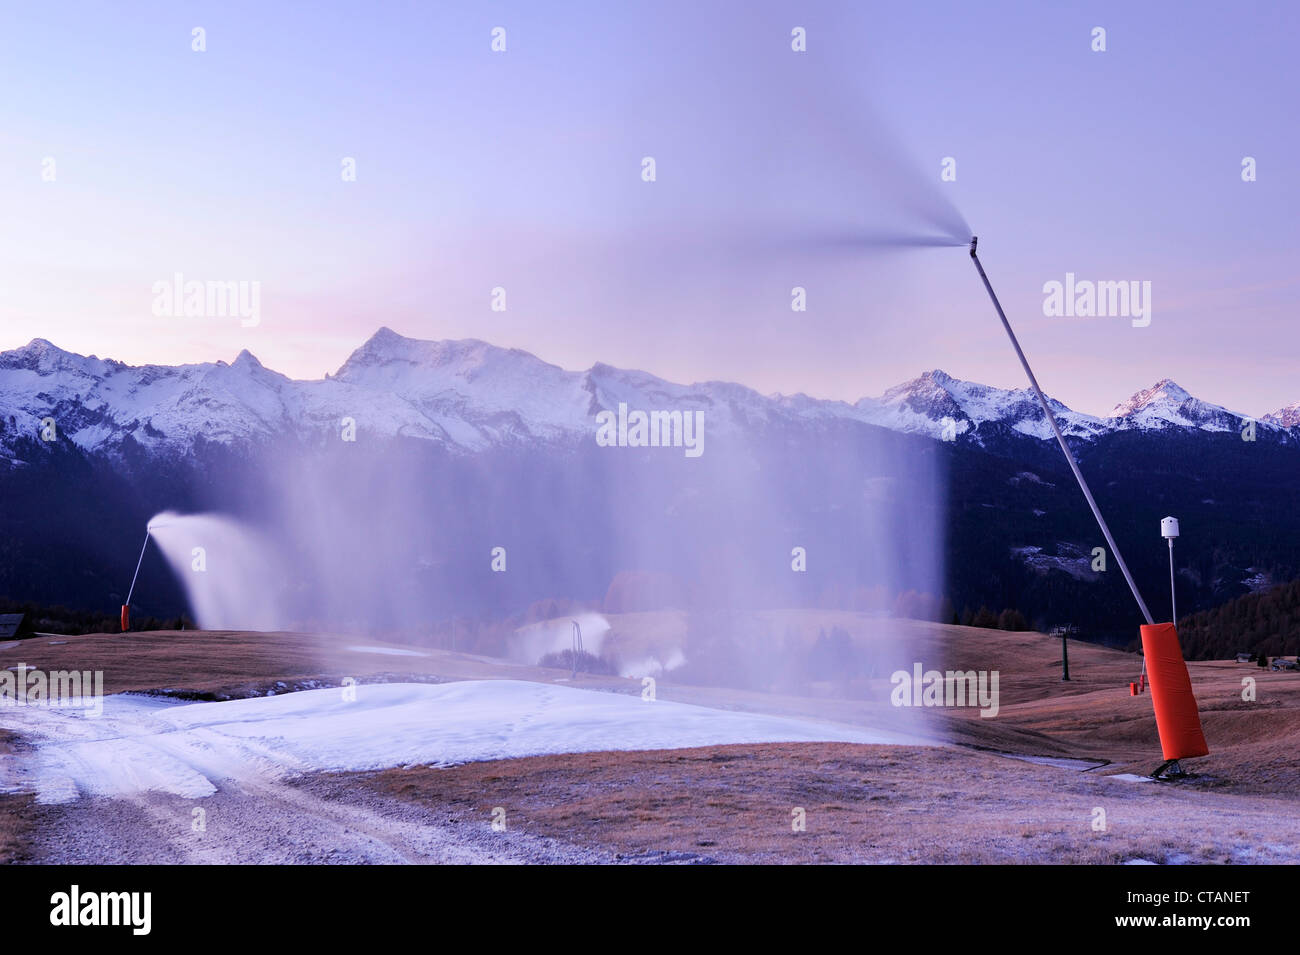 Schneekanonen bläst Kunstschnee auf Neigung, Lagorai Bereich im Hintergrund, Tal der Fiemme, Dolomiten, UNESCO-World Heritage S Stockfoto